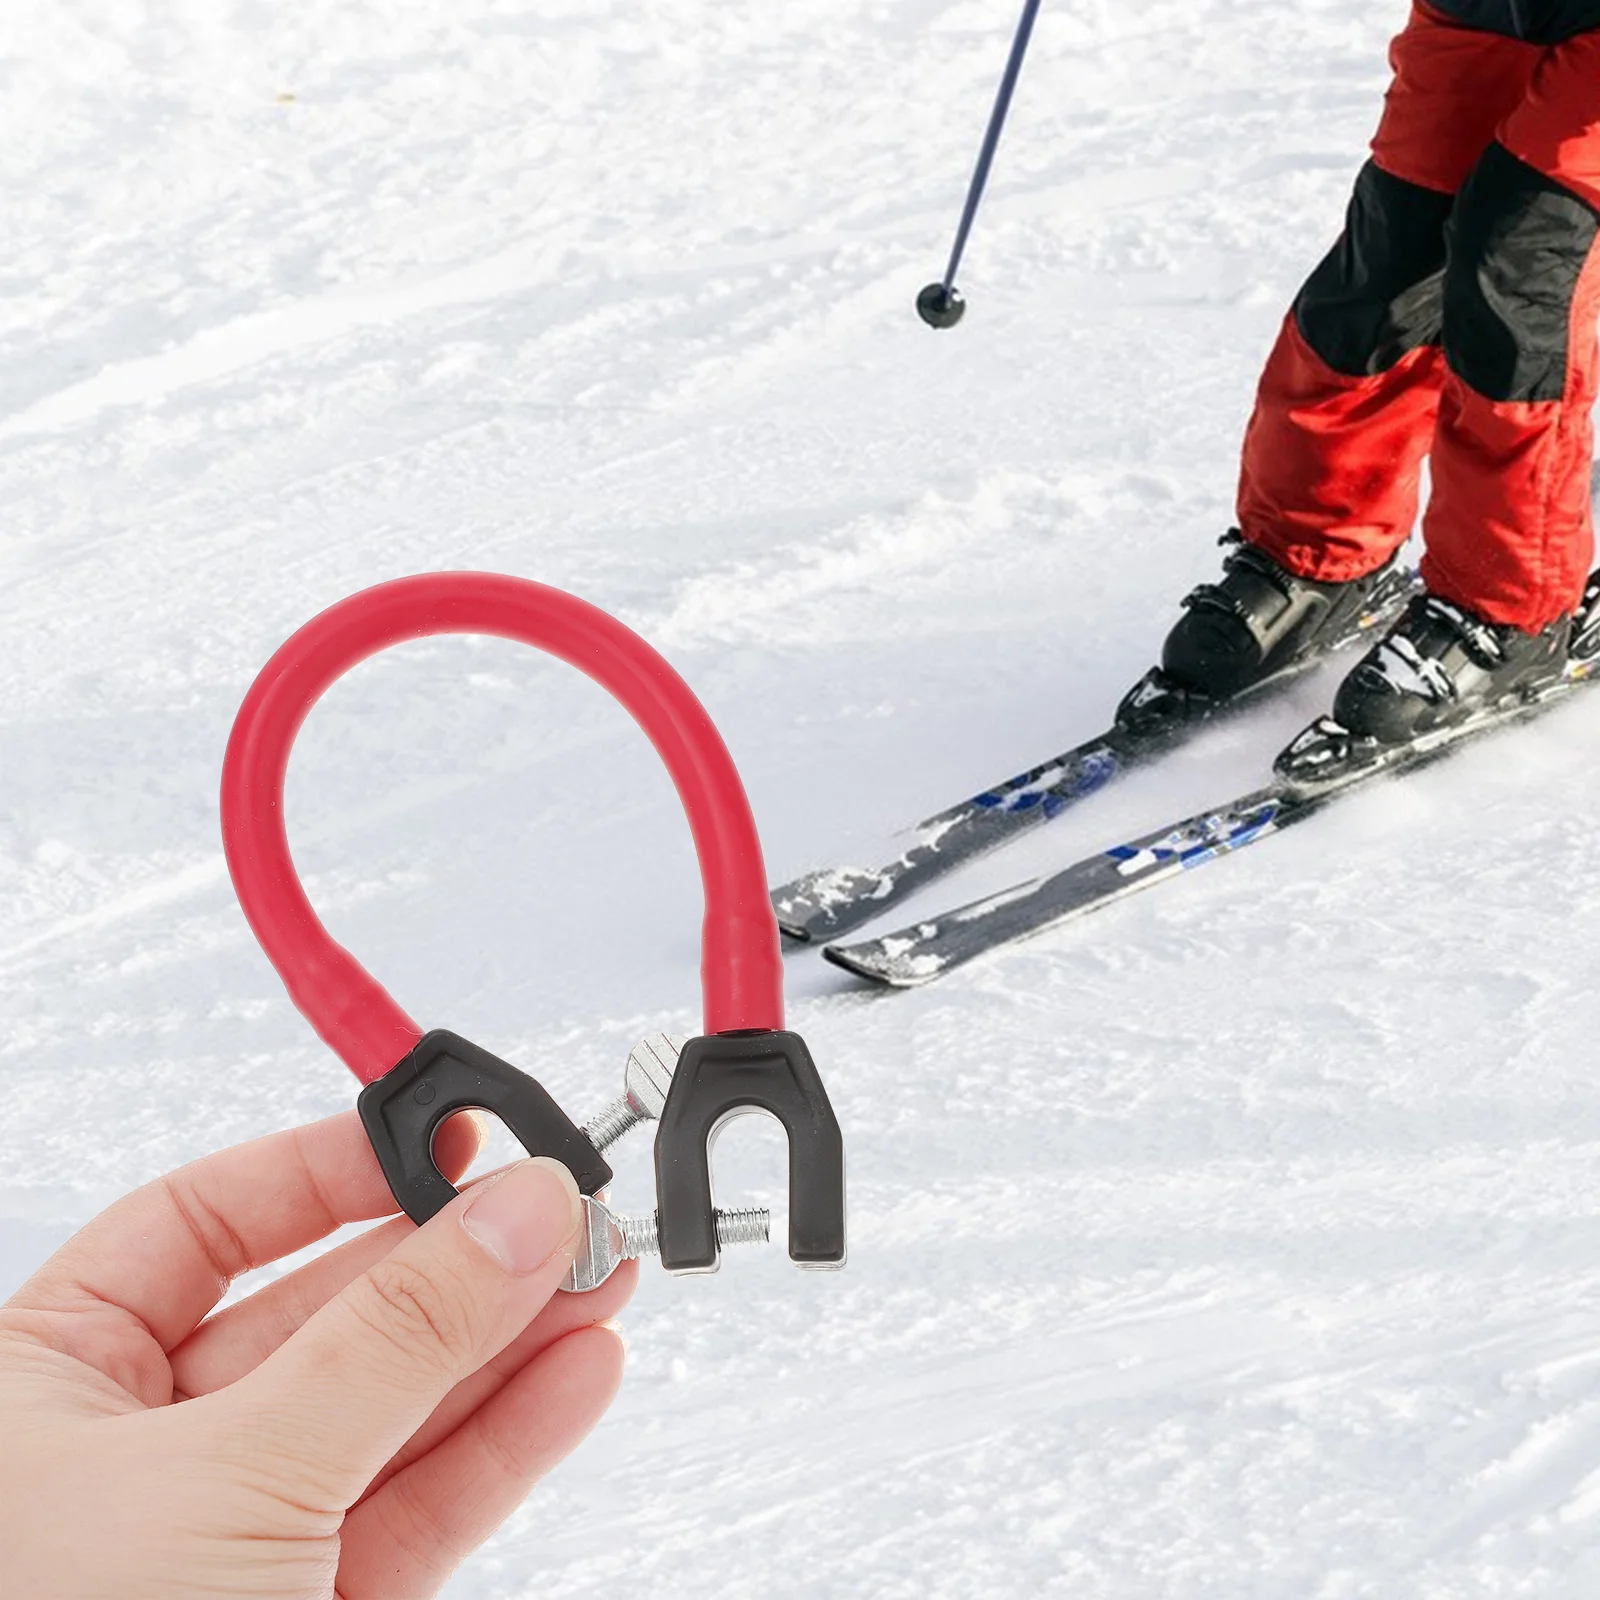 

Коннектор для лыжных наконечников Aidkids, легко учит начинающих, тренировочный ремень Wedgease для катания на лыжах, коннекторы, поводок для снега